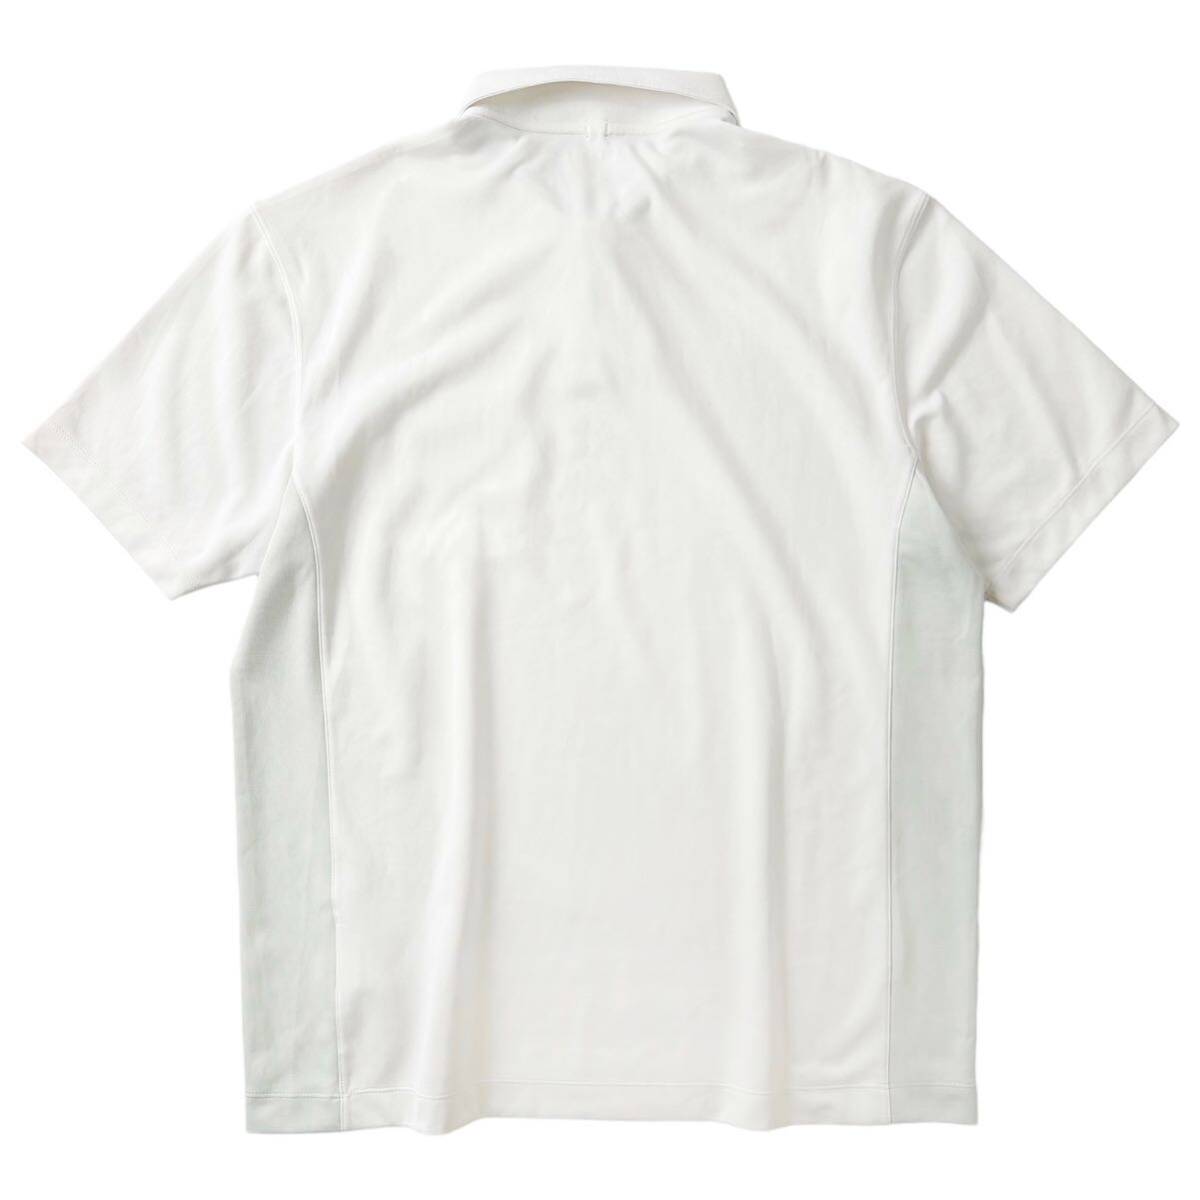 美品 NIKE GOLF ナイキ ゴルフ / DRI- FIT ストレッチ ポケット付き 半袖 ポロシャツ メンズ L サイズ 白 ホワイト シンプル ゴルフウェアの画像6